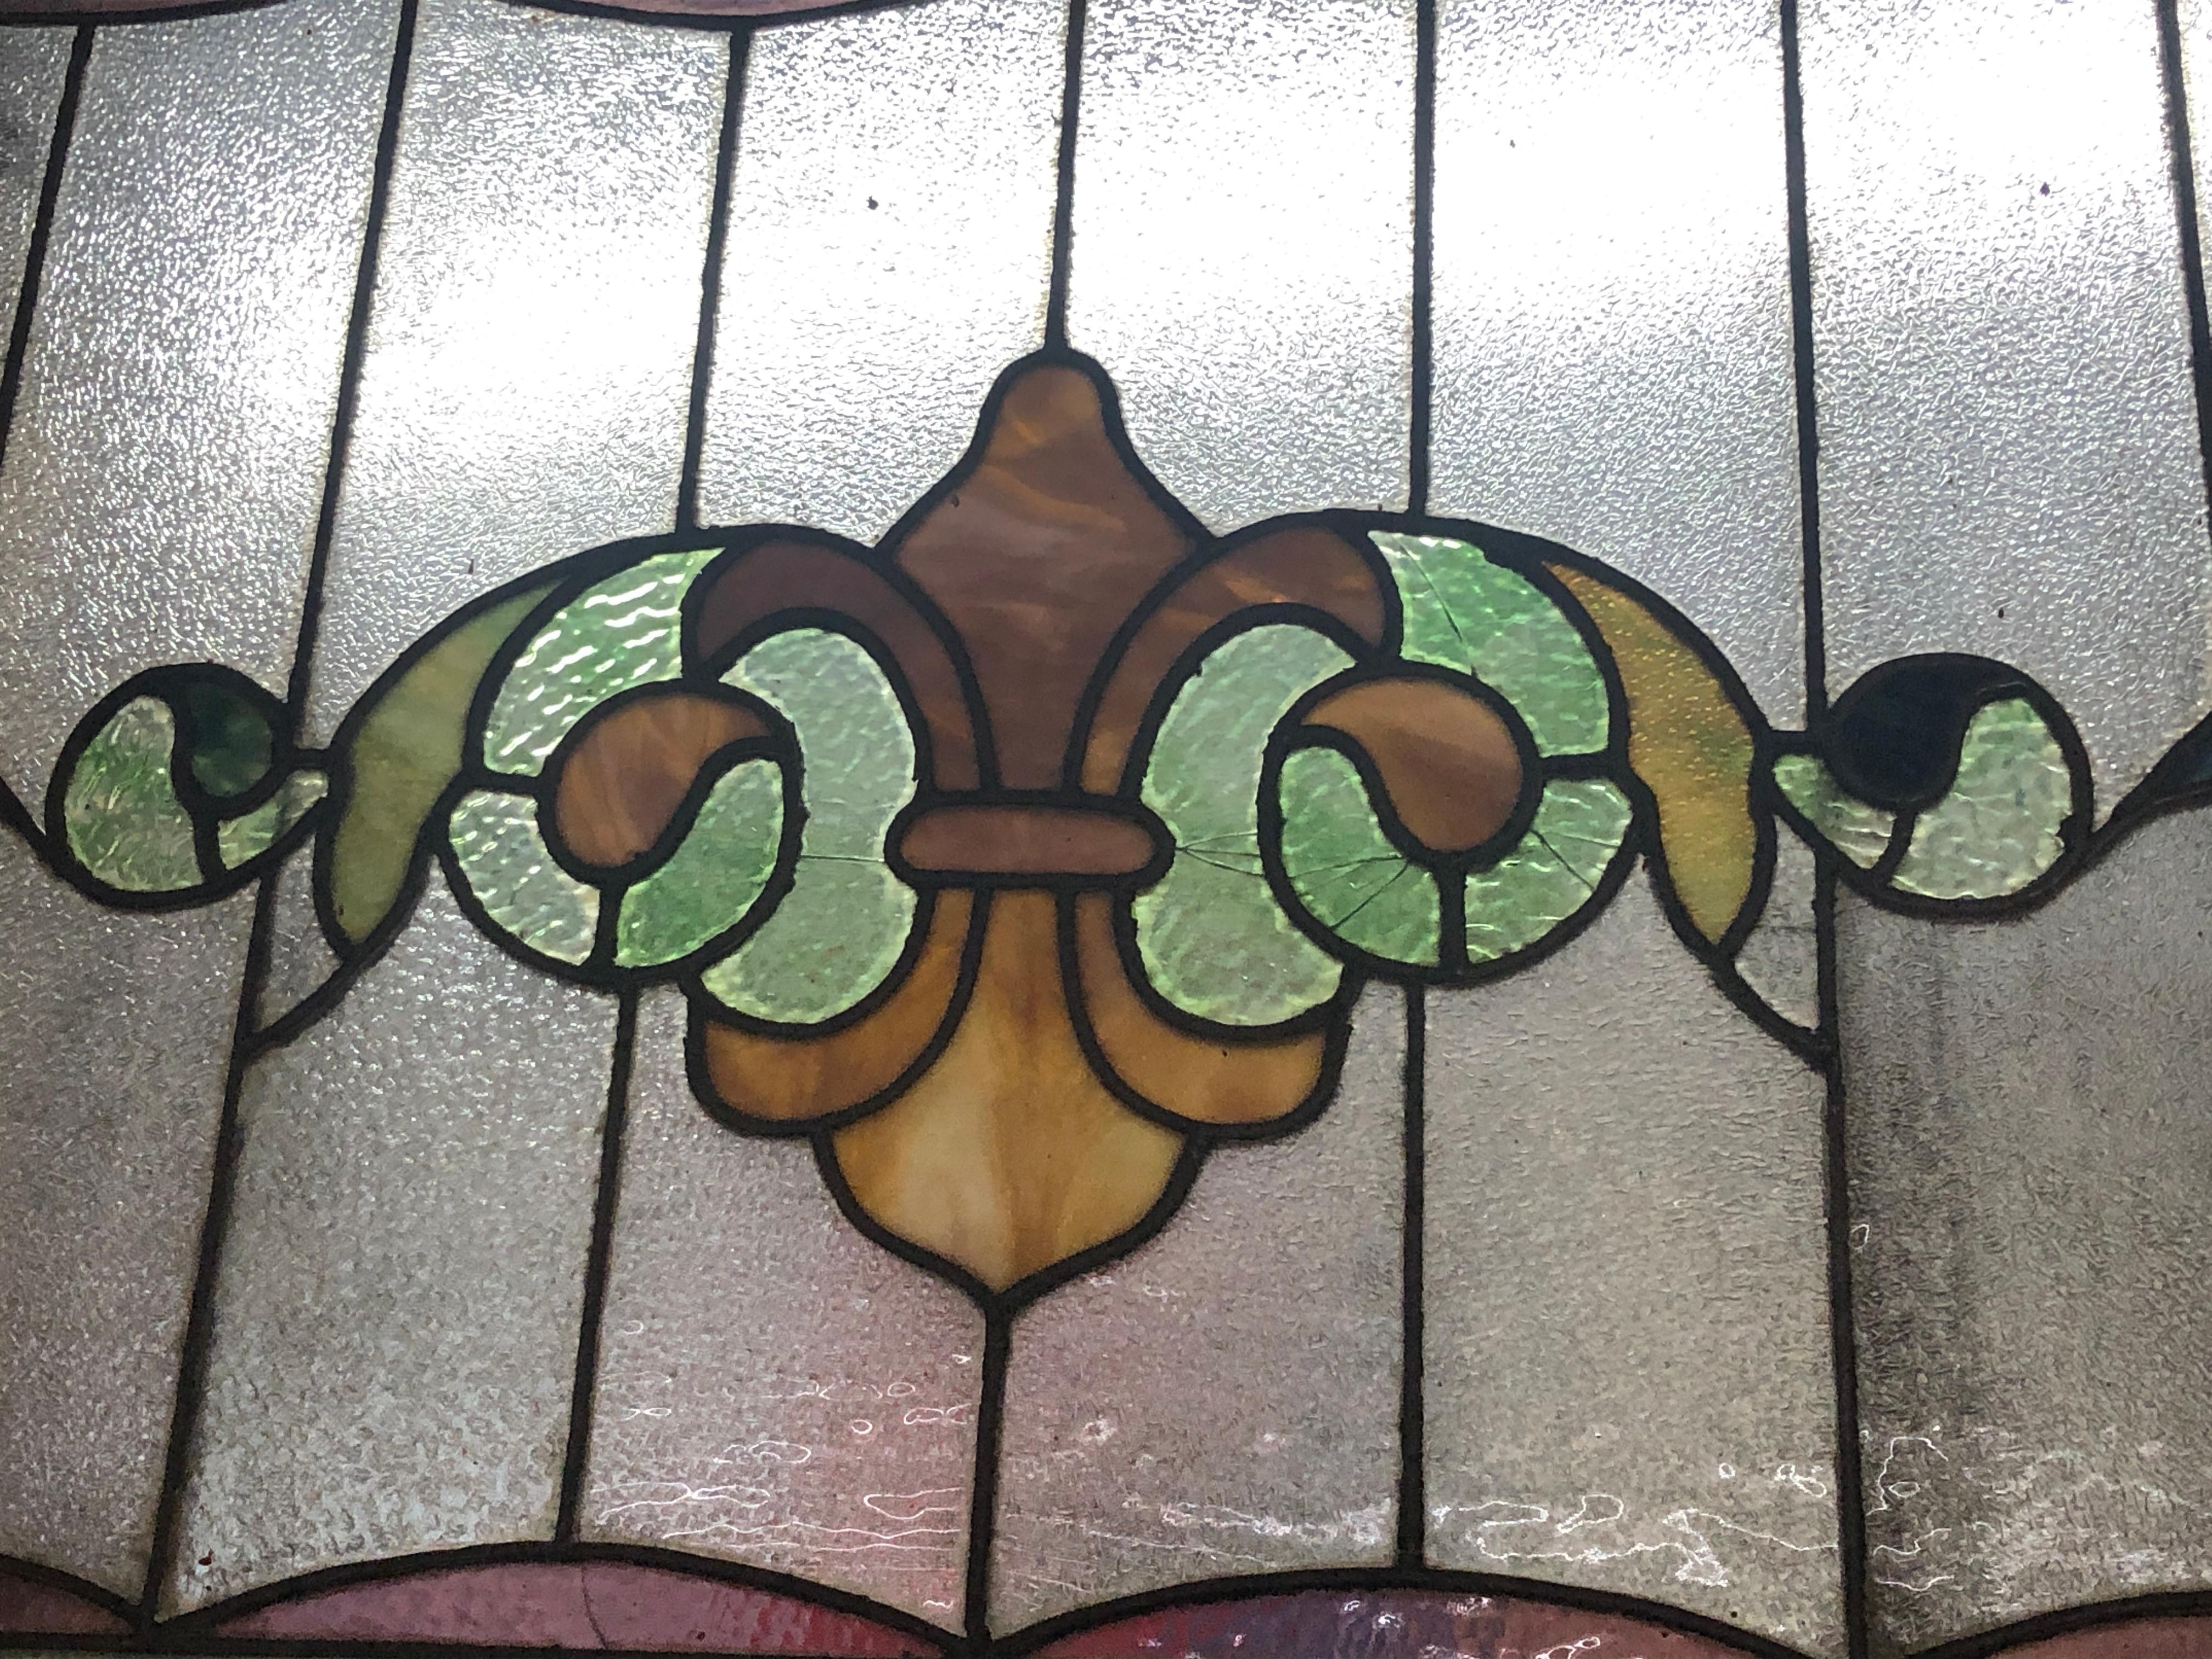 Fenêtre du début du siècle de fabrication américaine avec motif Fleur de lys en vitrail. 
Le vitrail est actuellement placé dans un cadre temporaire en bois - les dimensions totales sont celles du vitrail et du cadre.
Situé à NY